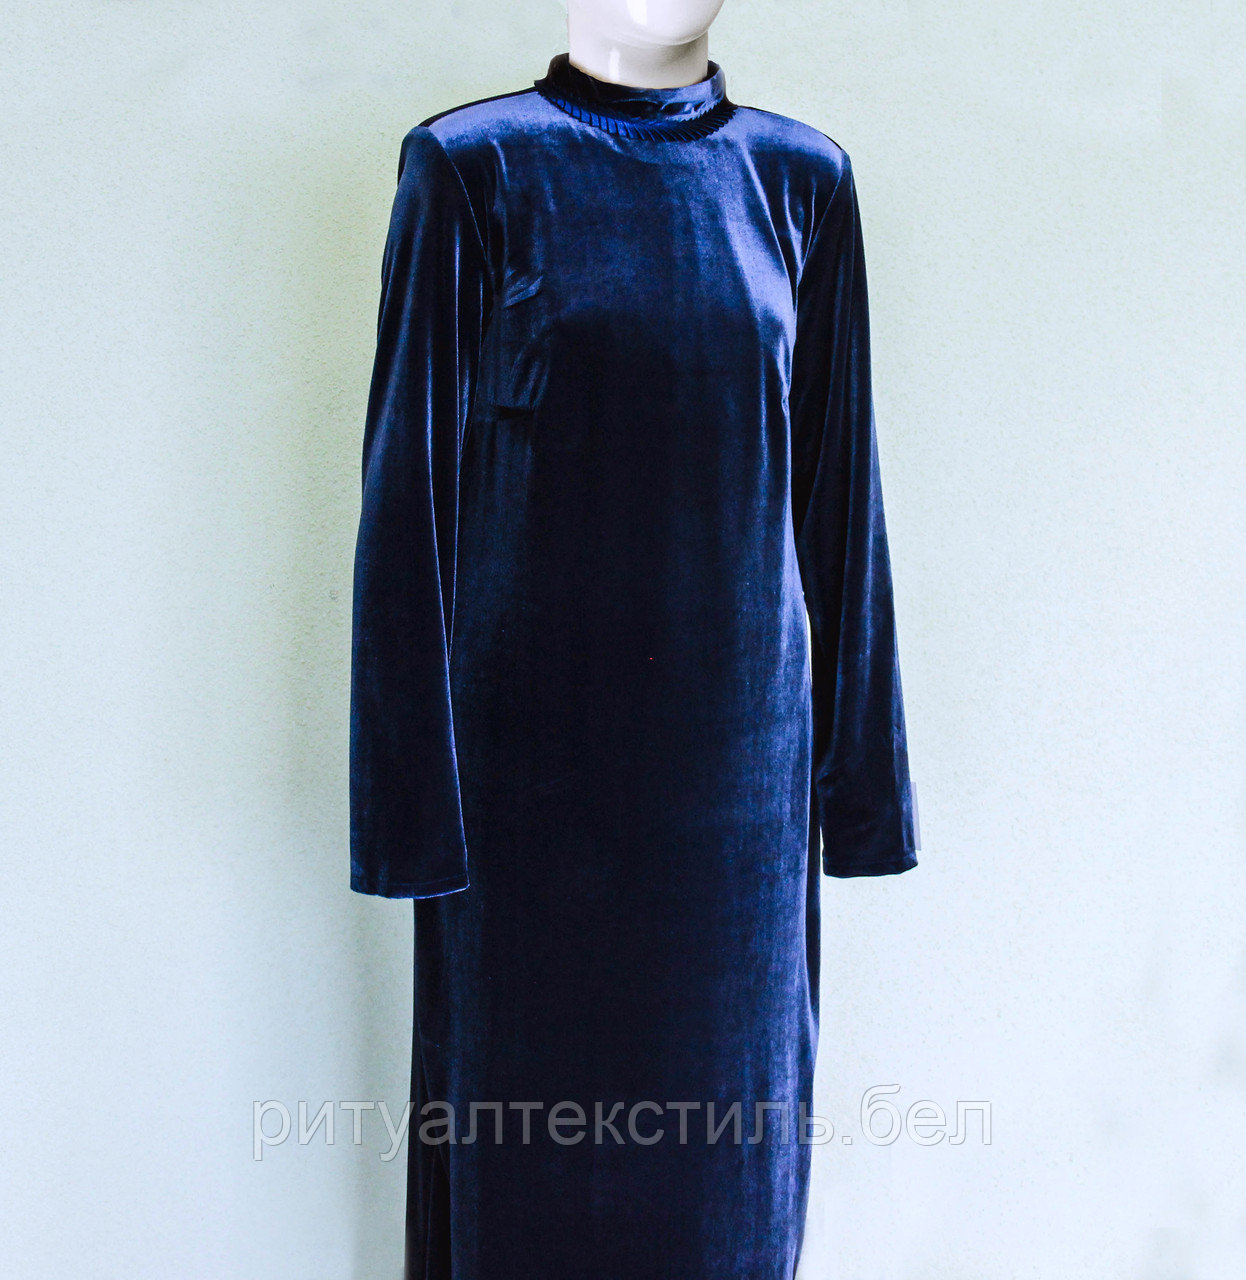 ОПТ. Платье бархатное ритуальное синее мокрый шелк